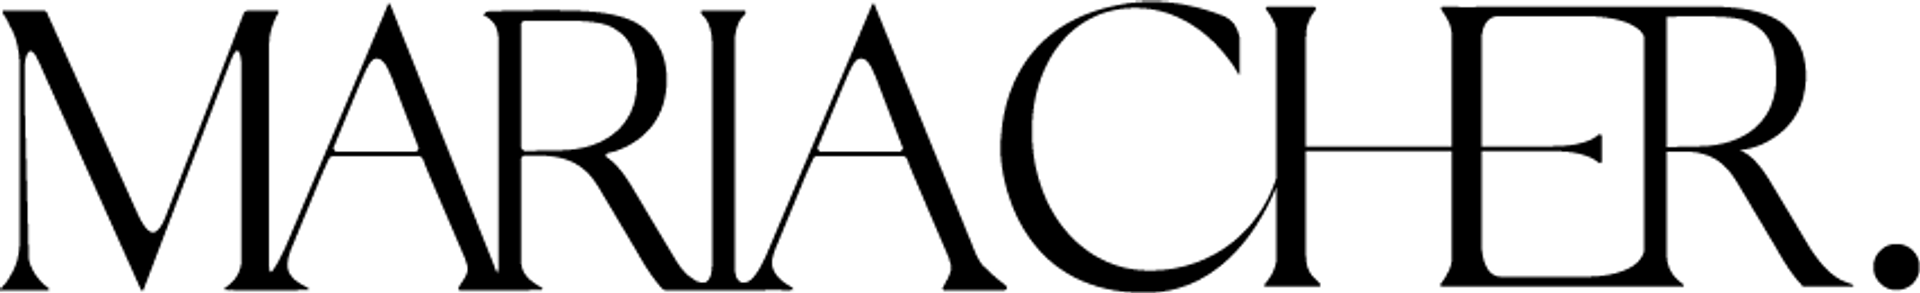 MARIA CHER logo de catálogo